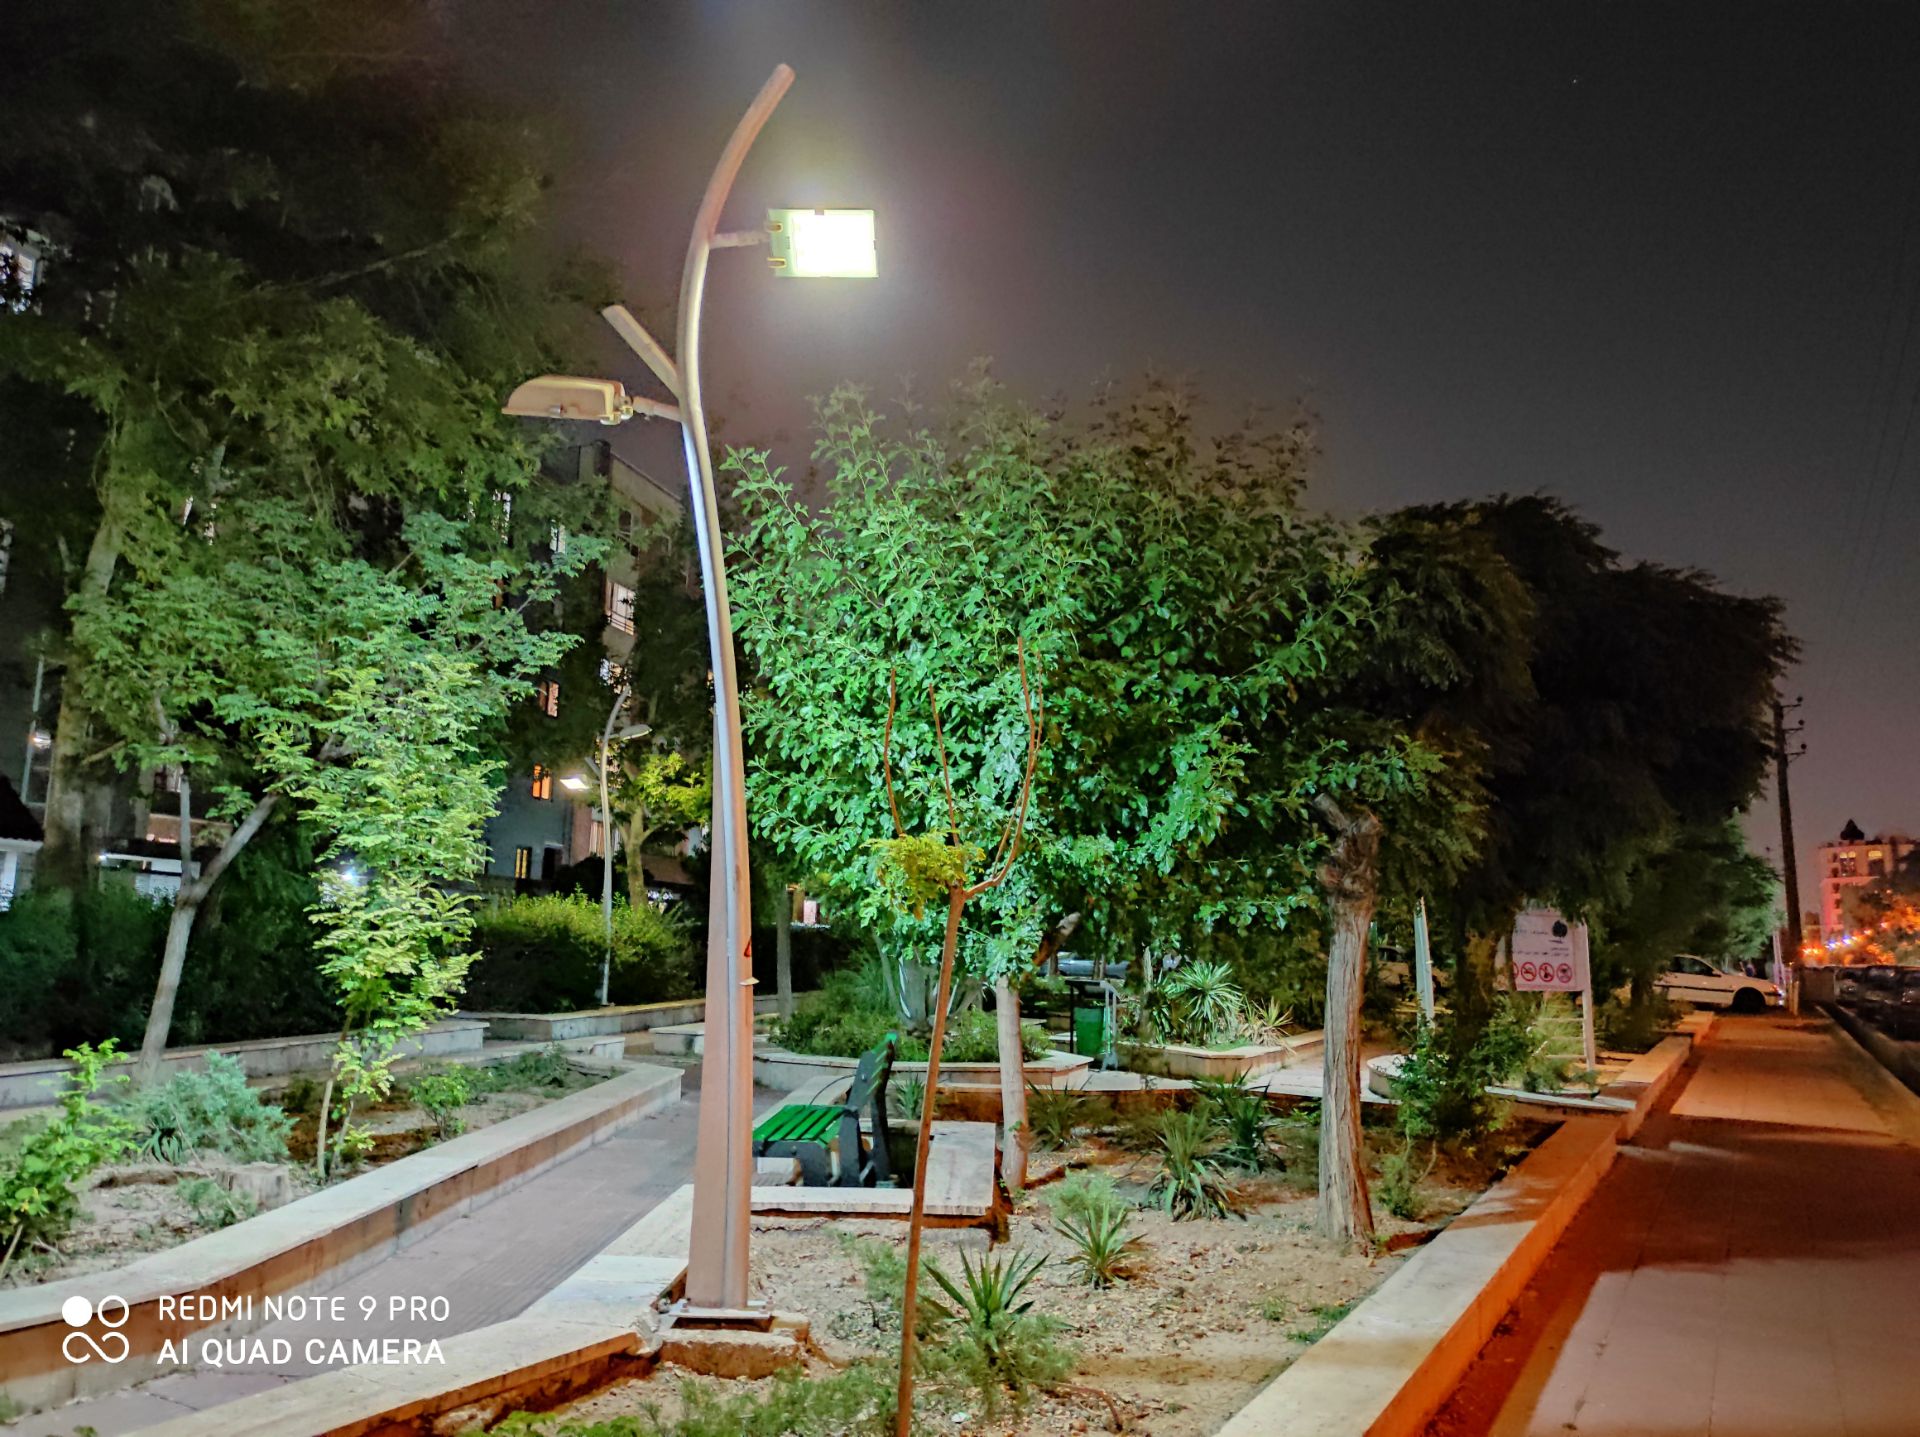 نمونه عکس ردمی نوت 9 پرو - درختان یک پارک در تاریکی